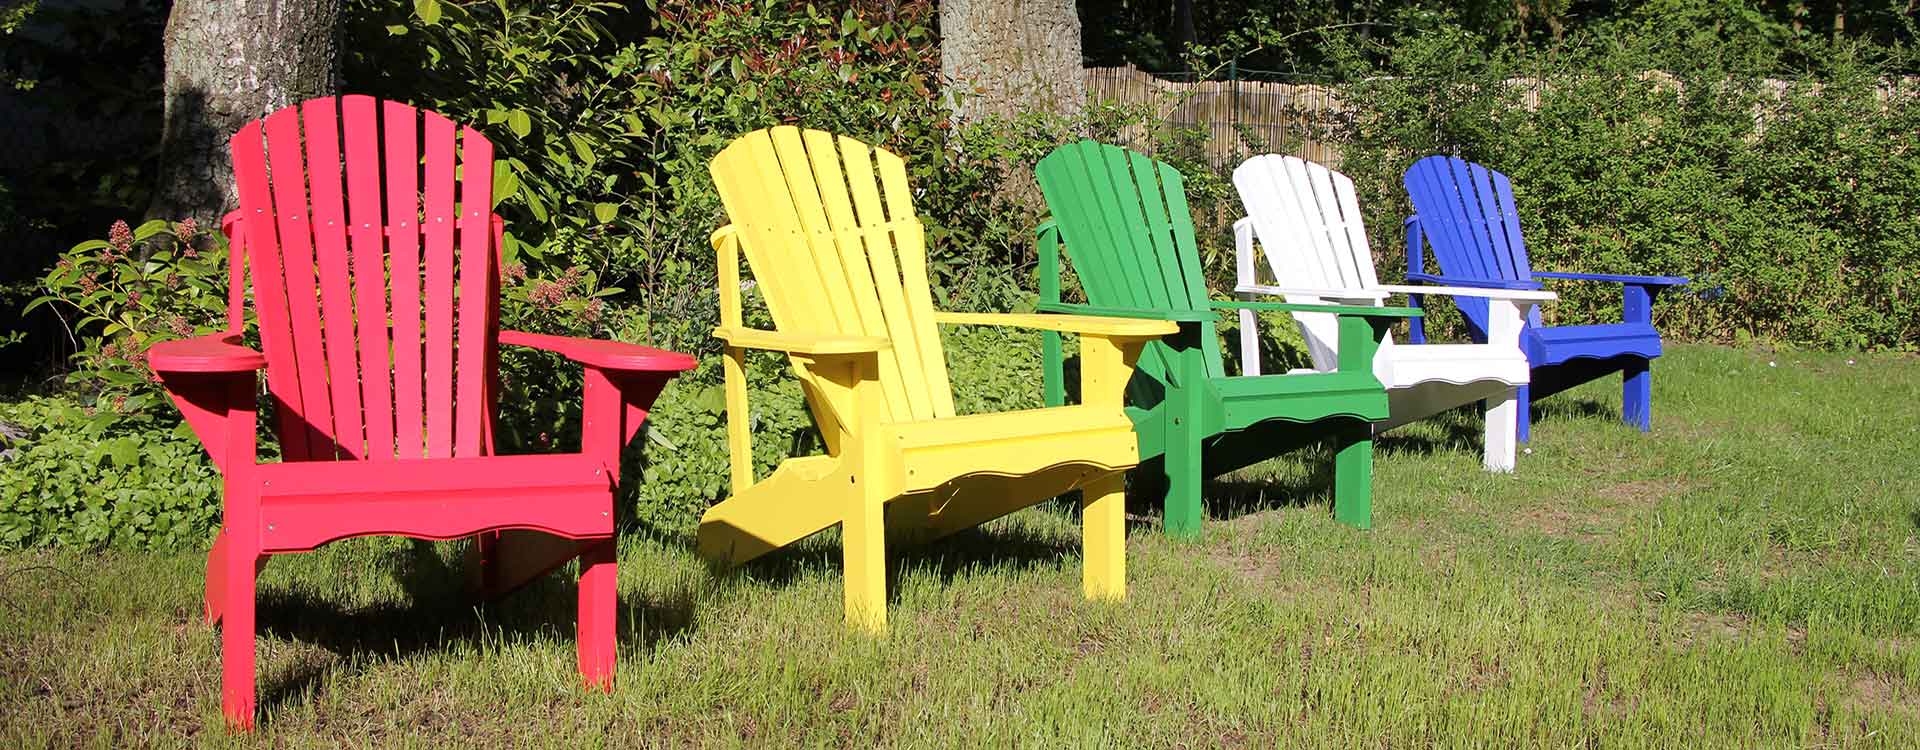 Der-Gartenstuhl GbR - Muskoka Chair, Adirondack Chair, Gartenstühle aus Norderstedt